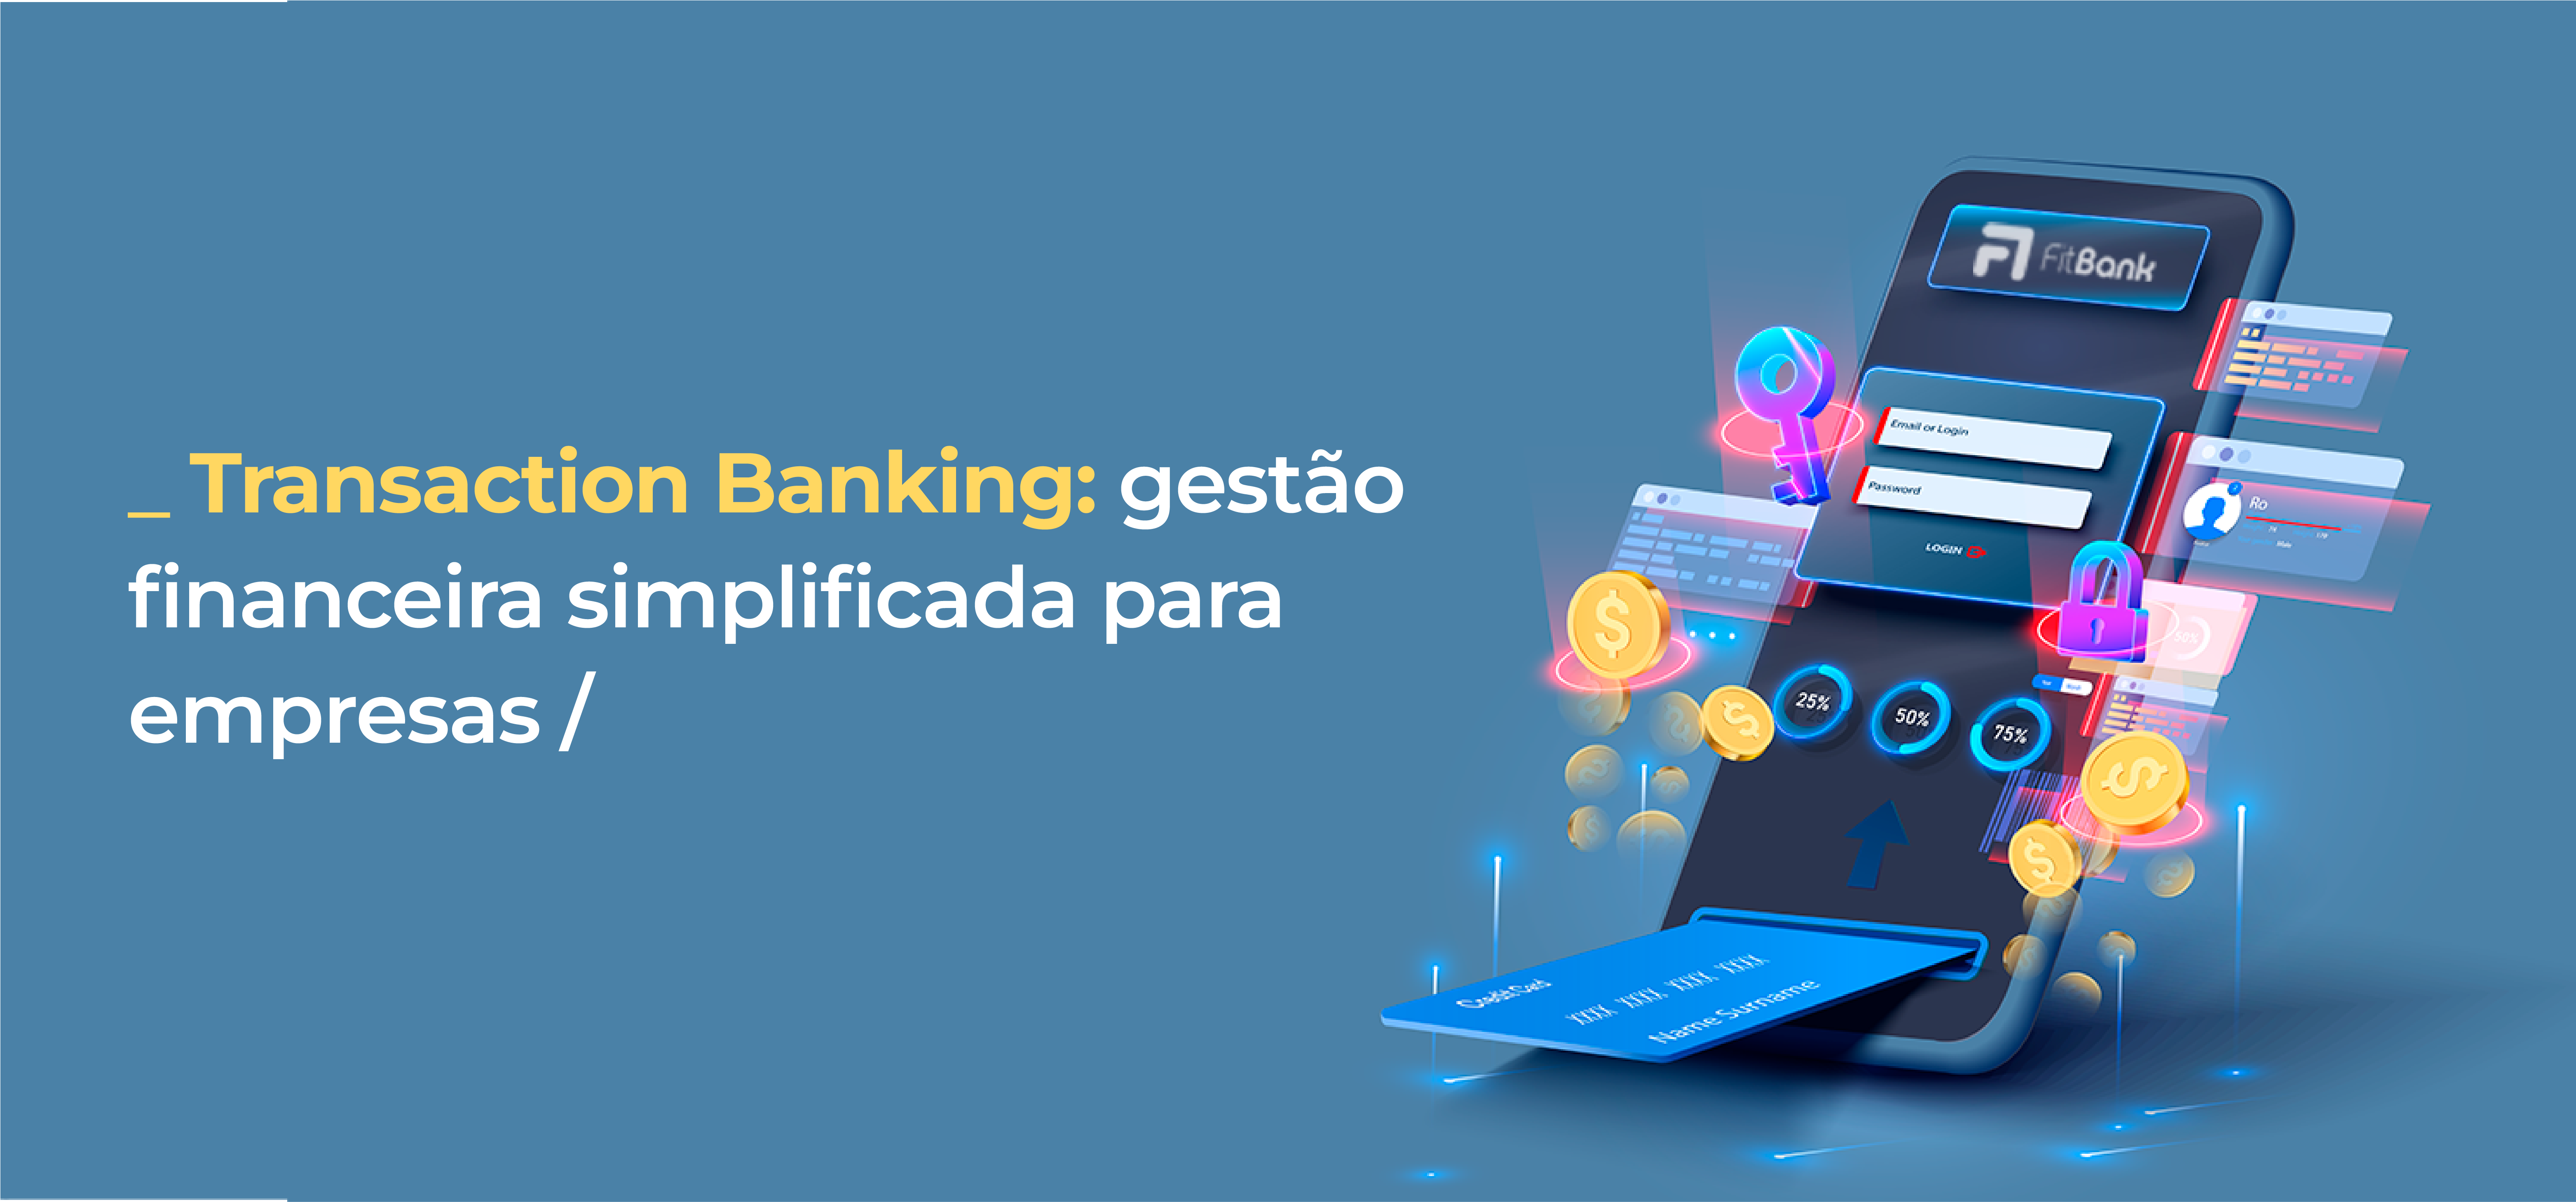 Transaction Banking: gestão financeira simplificada para empresas